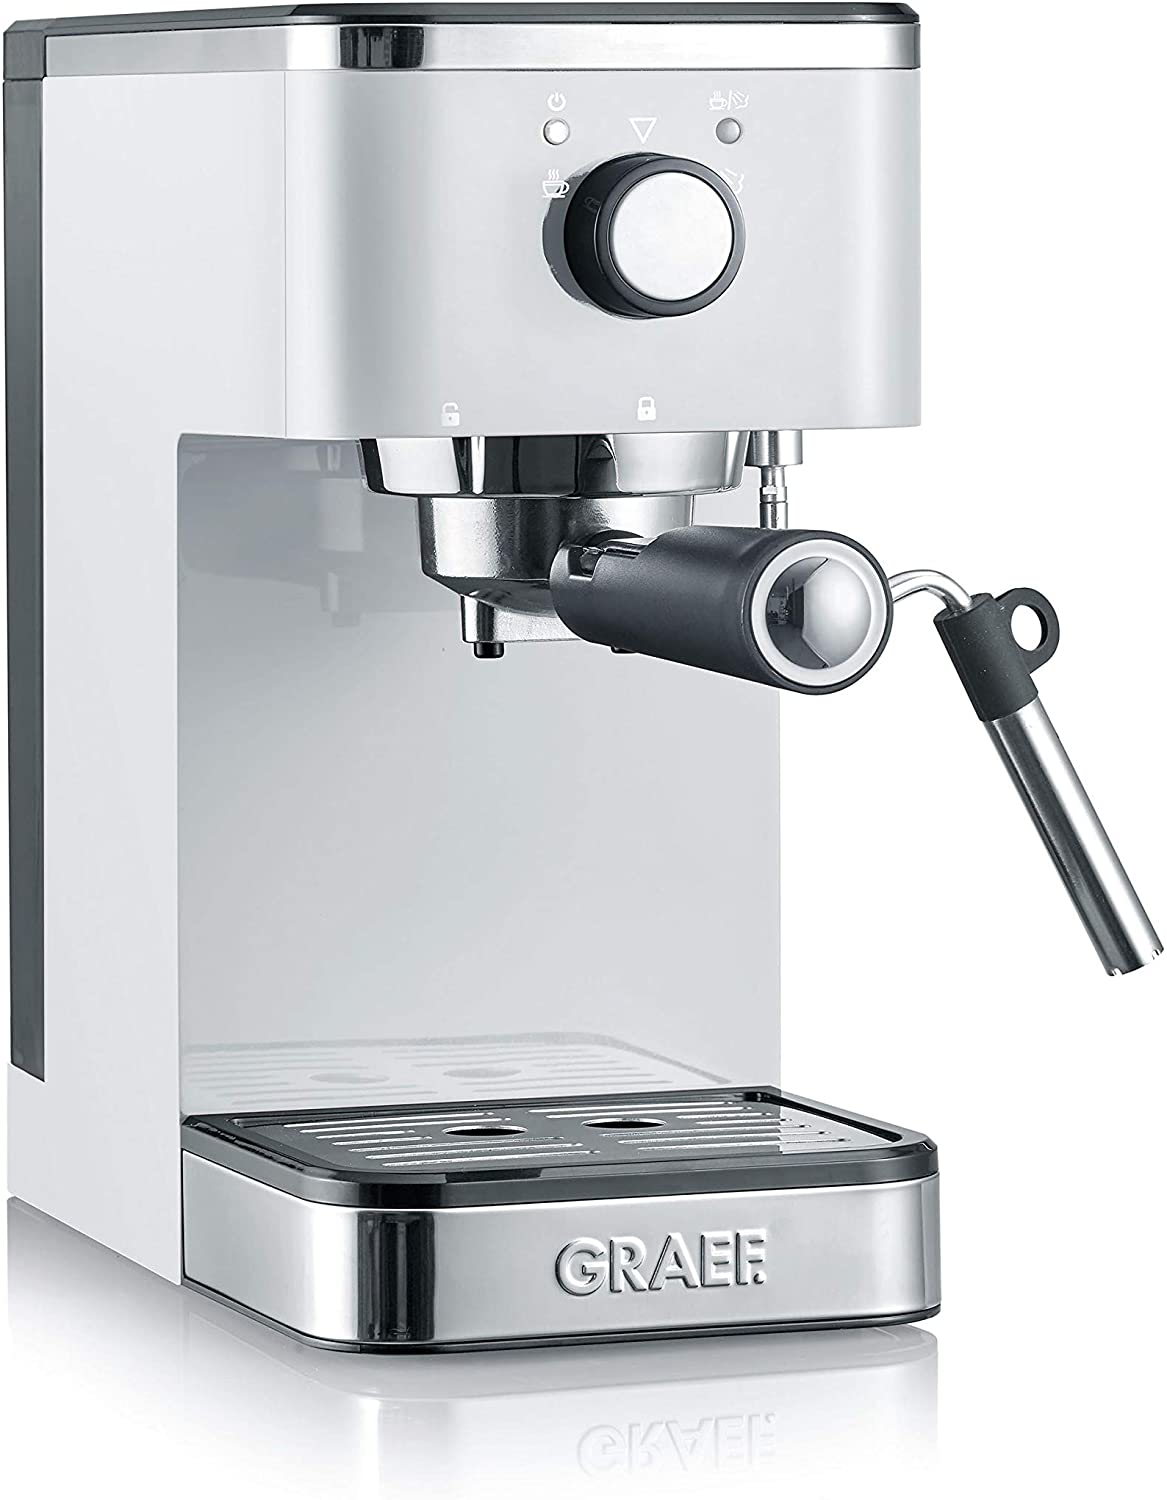 Graef Salita Espresso Machine with Filter Holder Red 1400 W